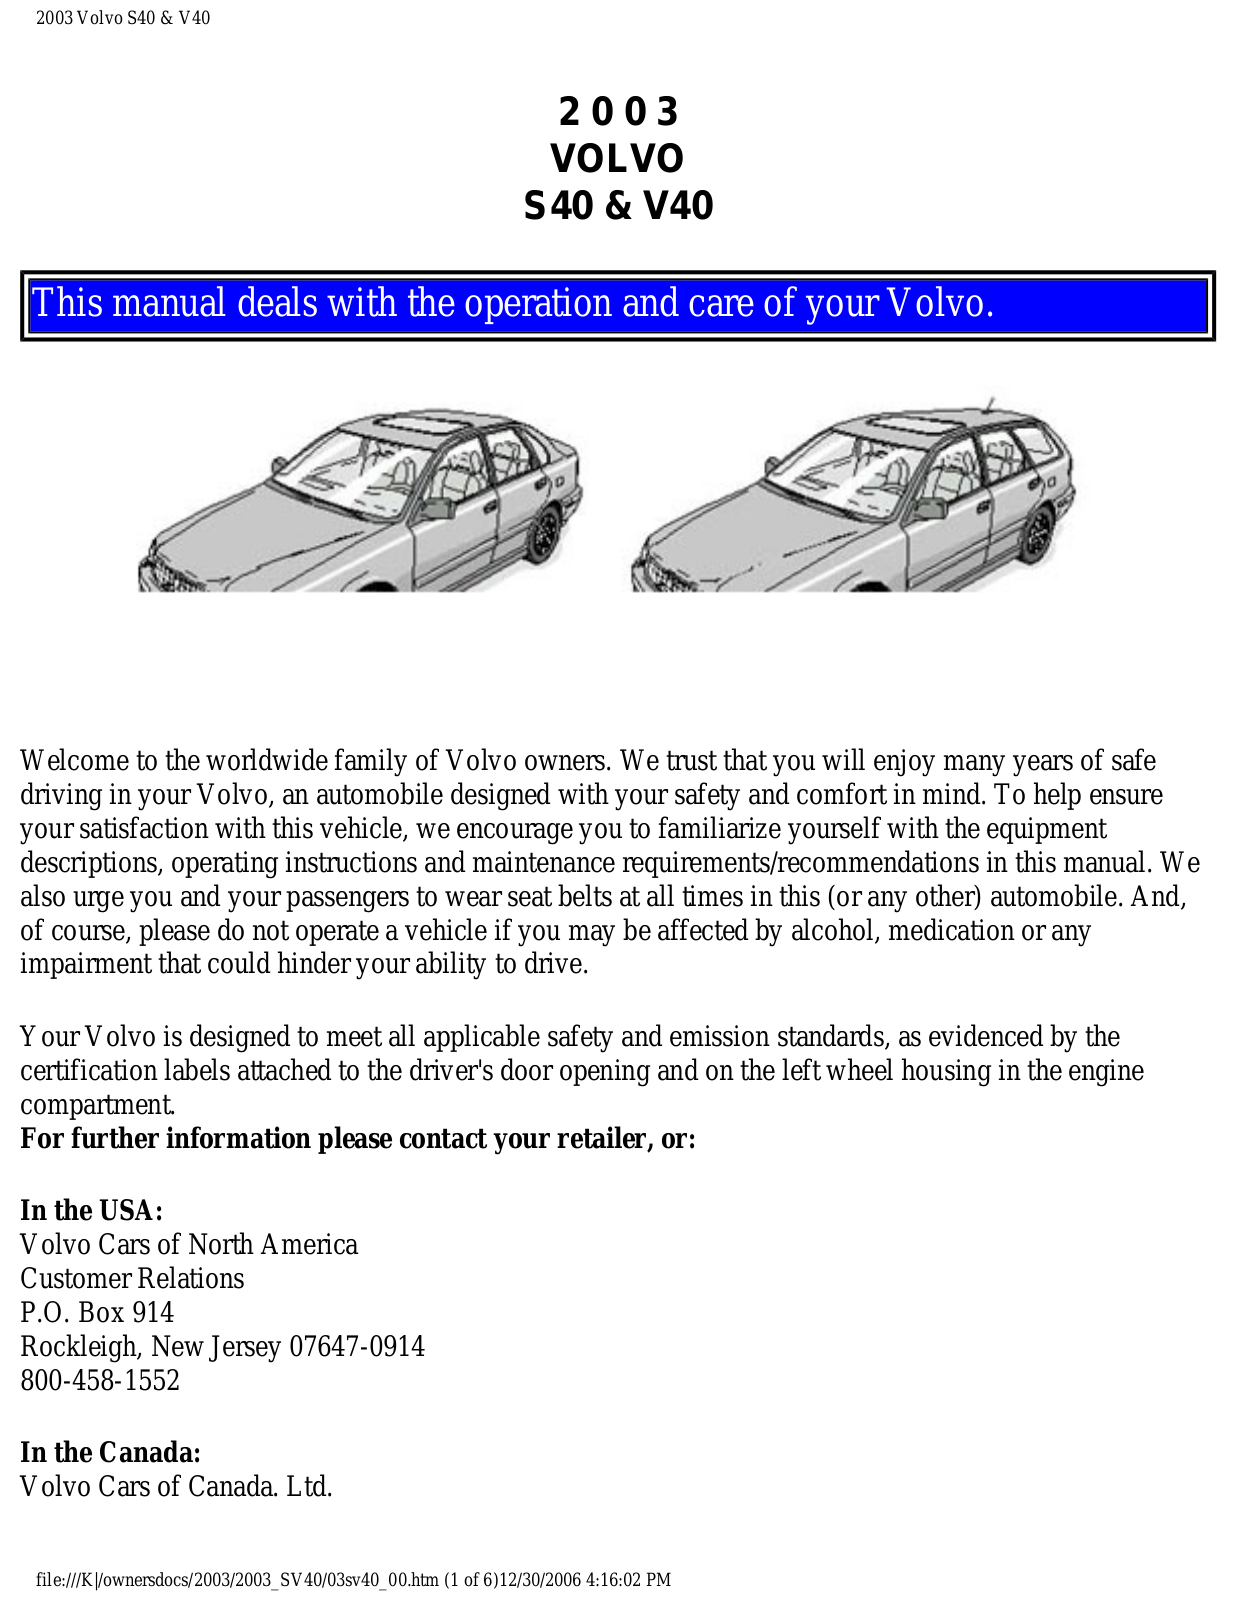 Volvo S40 2003, V40 2003 Owner Manual